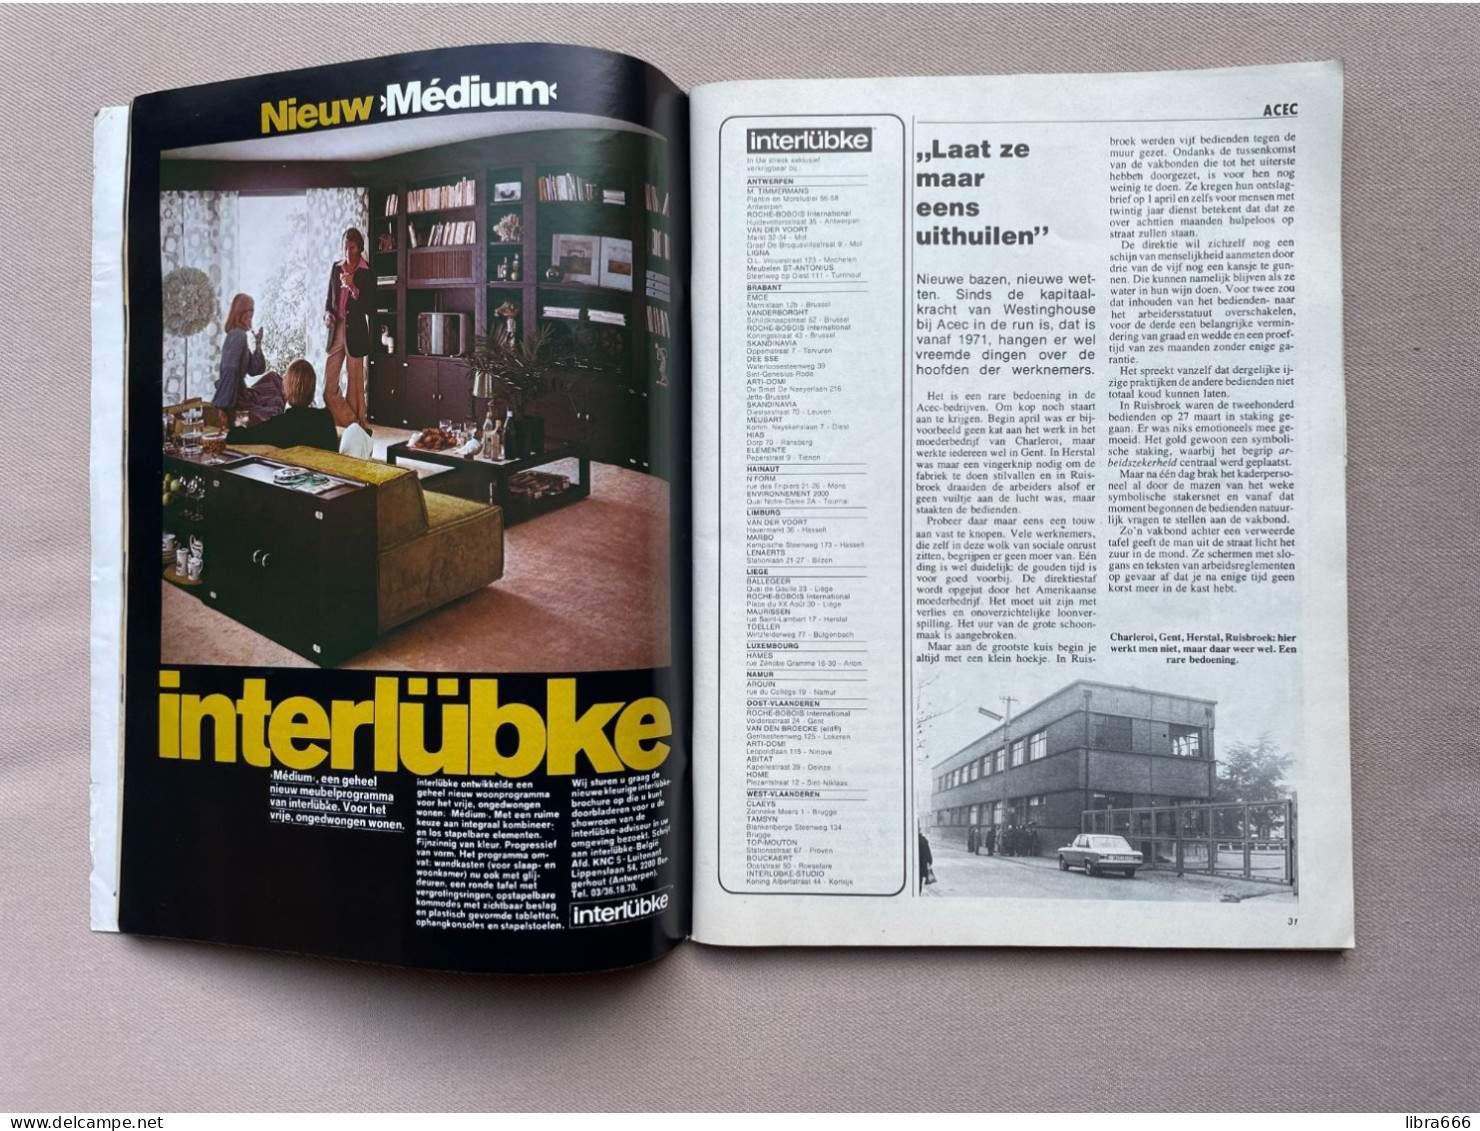 KNACK MAGAZINE Nr.15 1974 174 Pp 75 Jaar Voetbal In Brugge, De Erfenis Van Pompidou, Acec Staakt, Geeraerts In New Delhi - Algemene Informatie